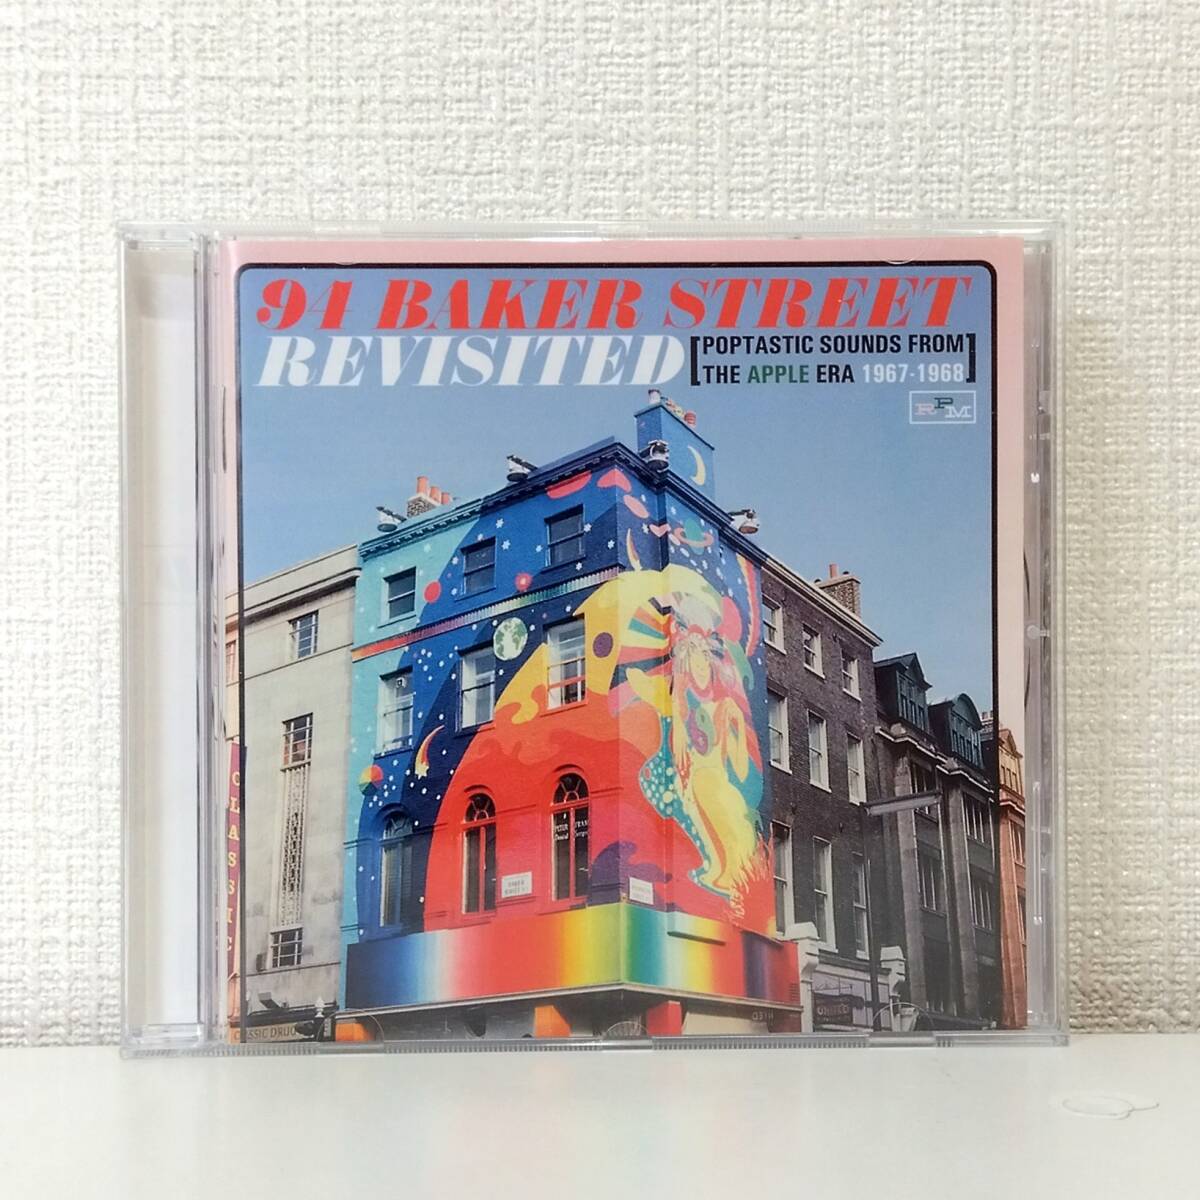 洋CD★ V.A. 94 Baker Street Revisited: Poptastic Sounds From The Apple Era retro920の画像1